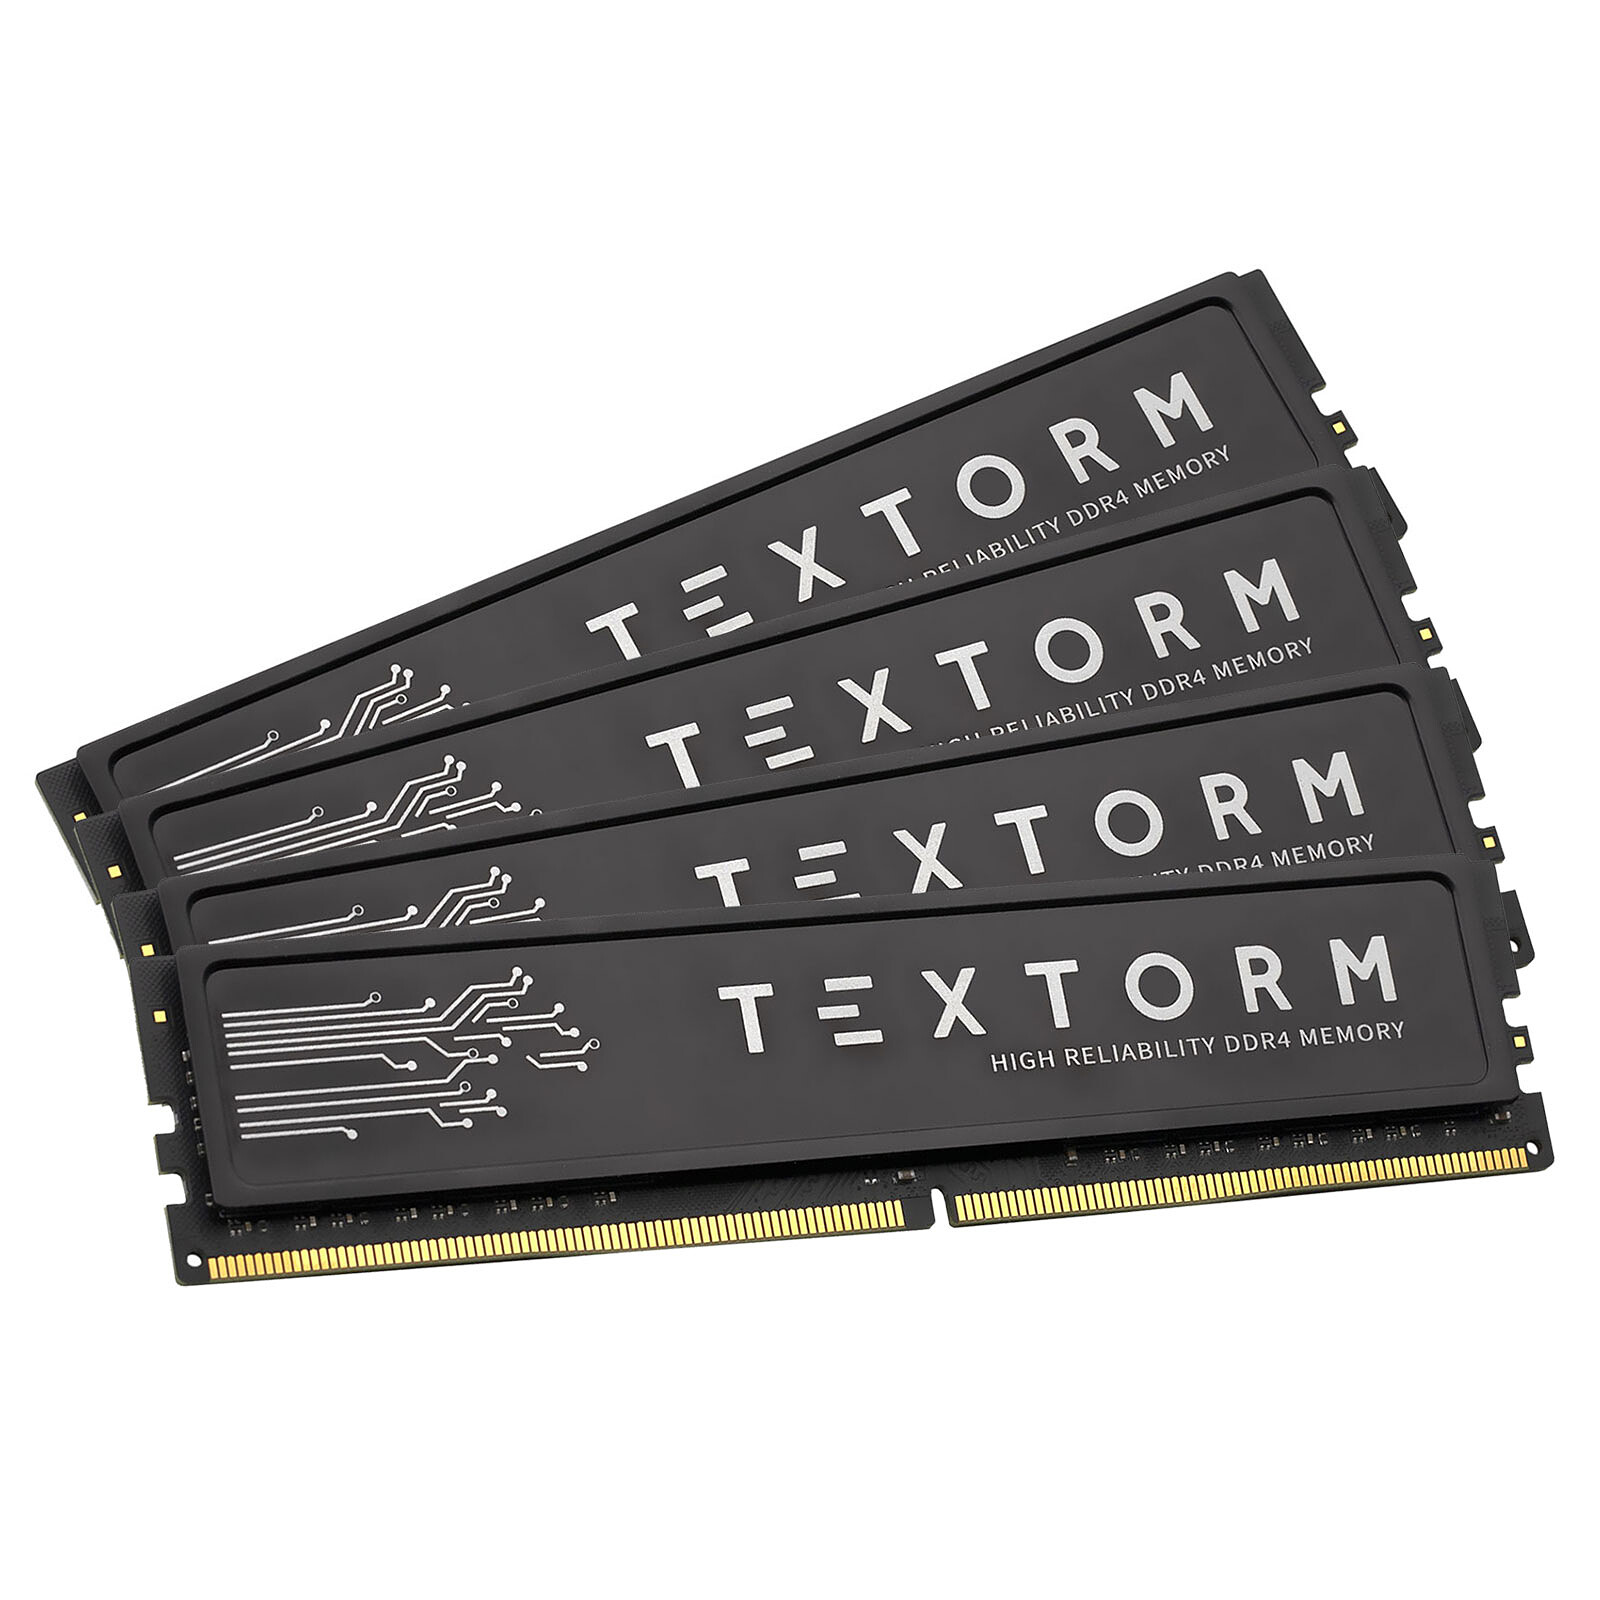 Textorm - 1 x 16 Go (16 Go) - DDR4 2666 MHz - CL19 - Mémoire Textorm sur